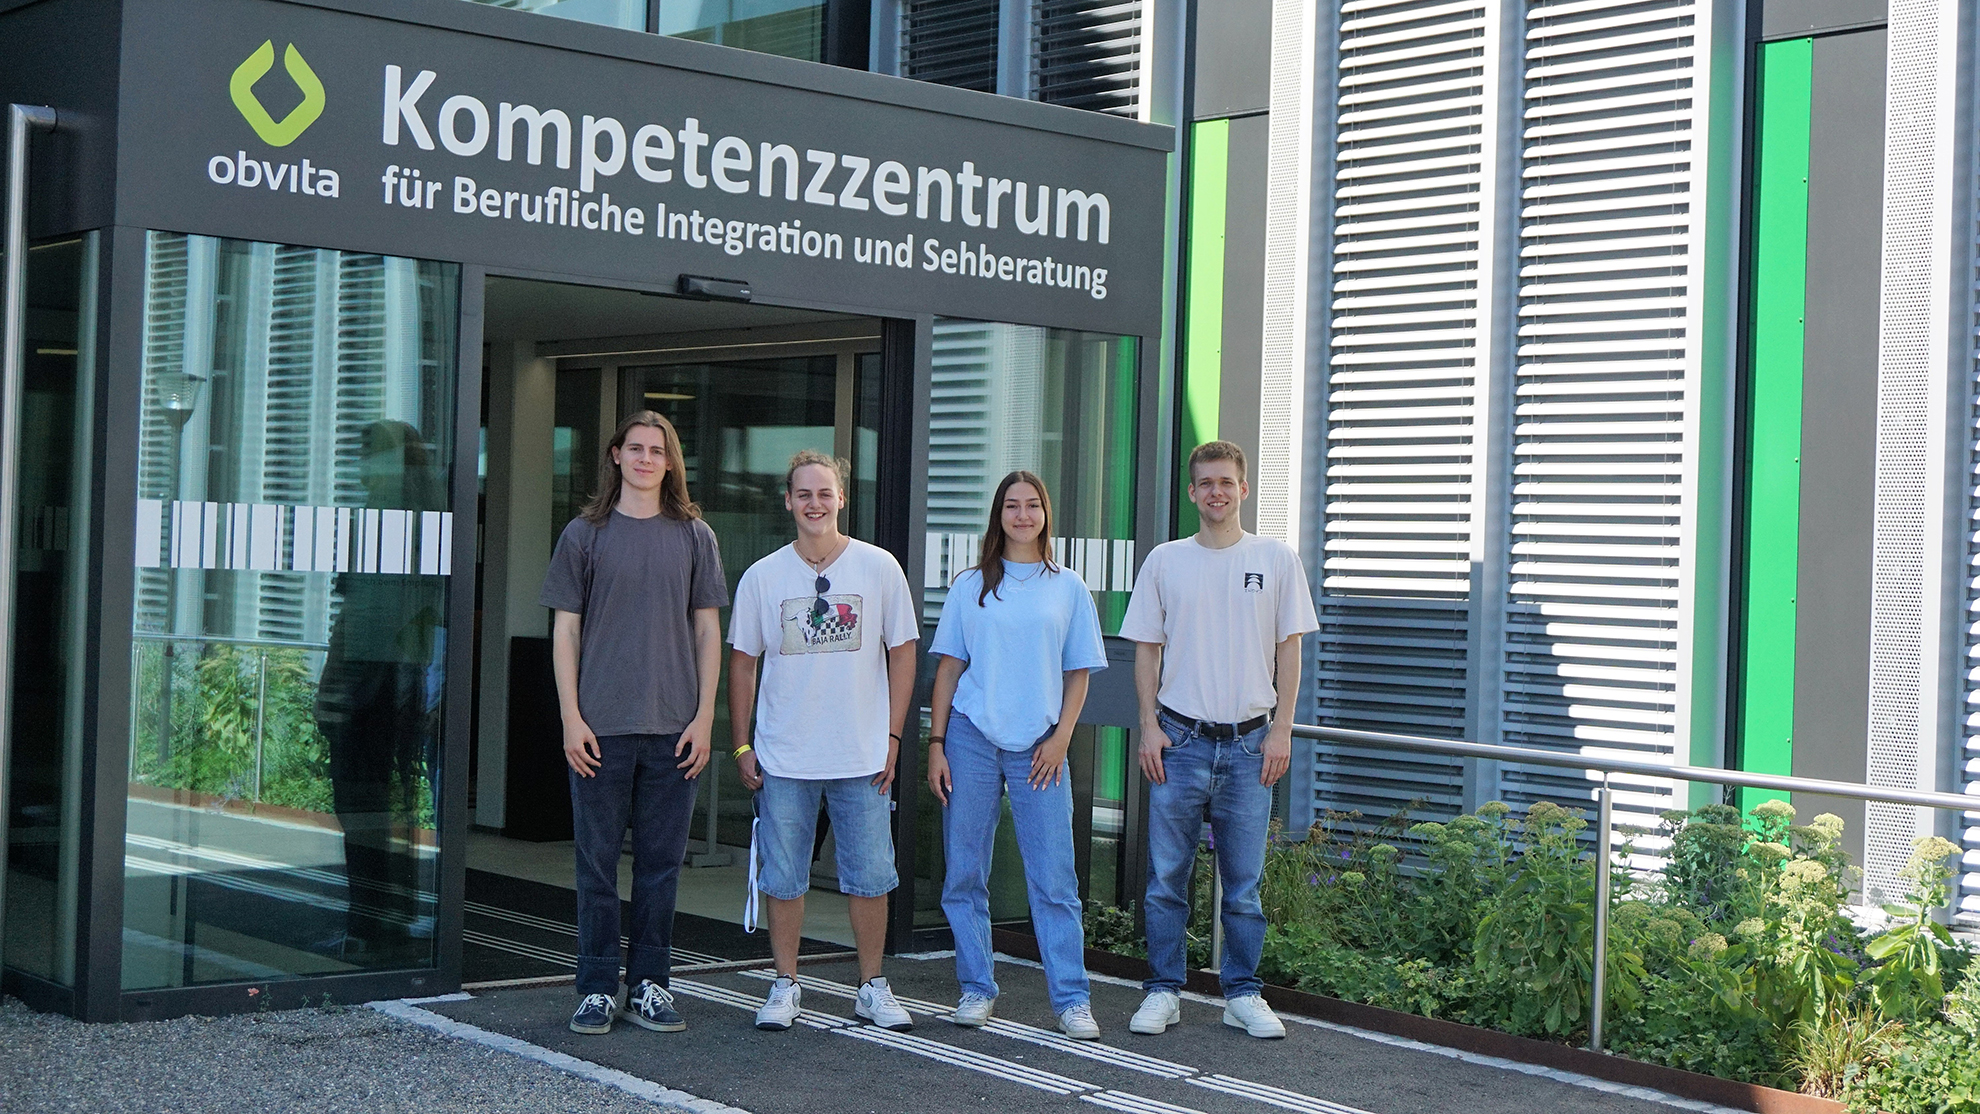 Dialogerin und Dialoger beim Eingang zum obvita-Kompetenzzentrum in St. Gallen